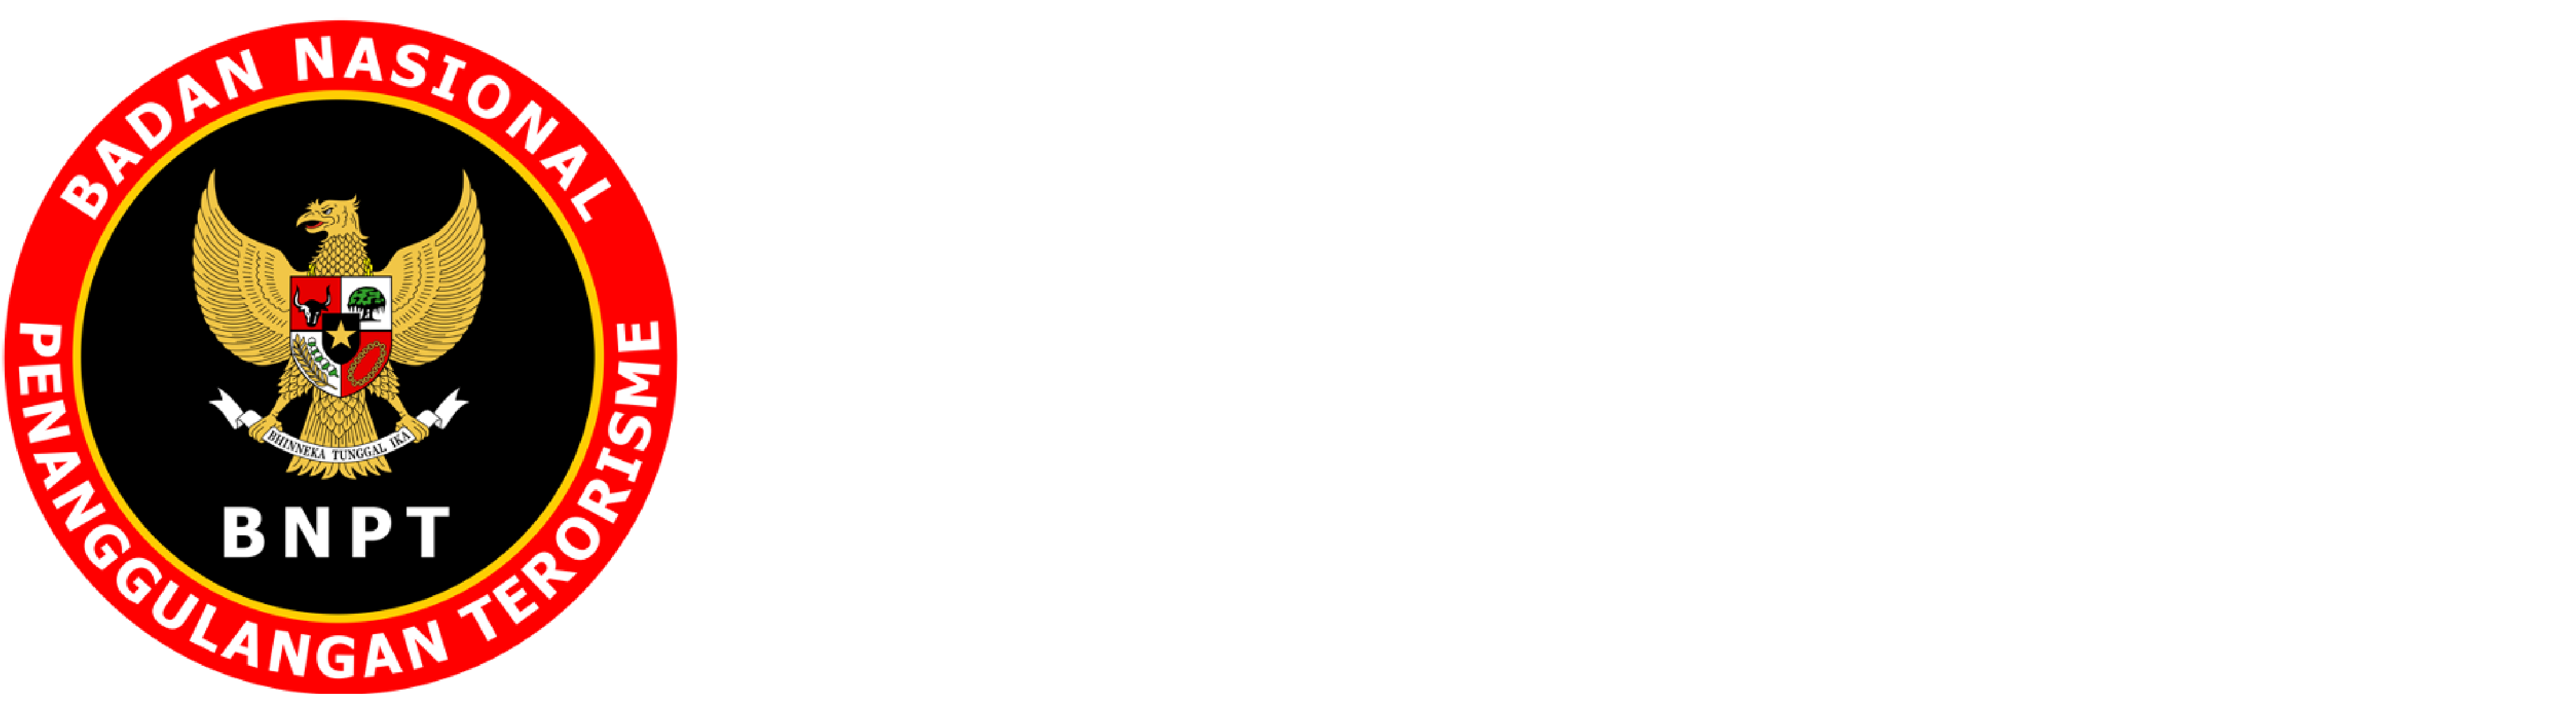 logo-ikhub